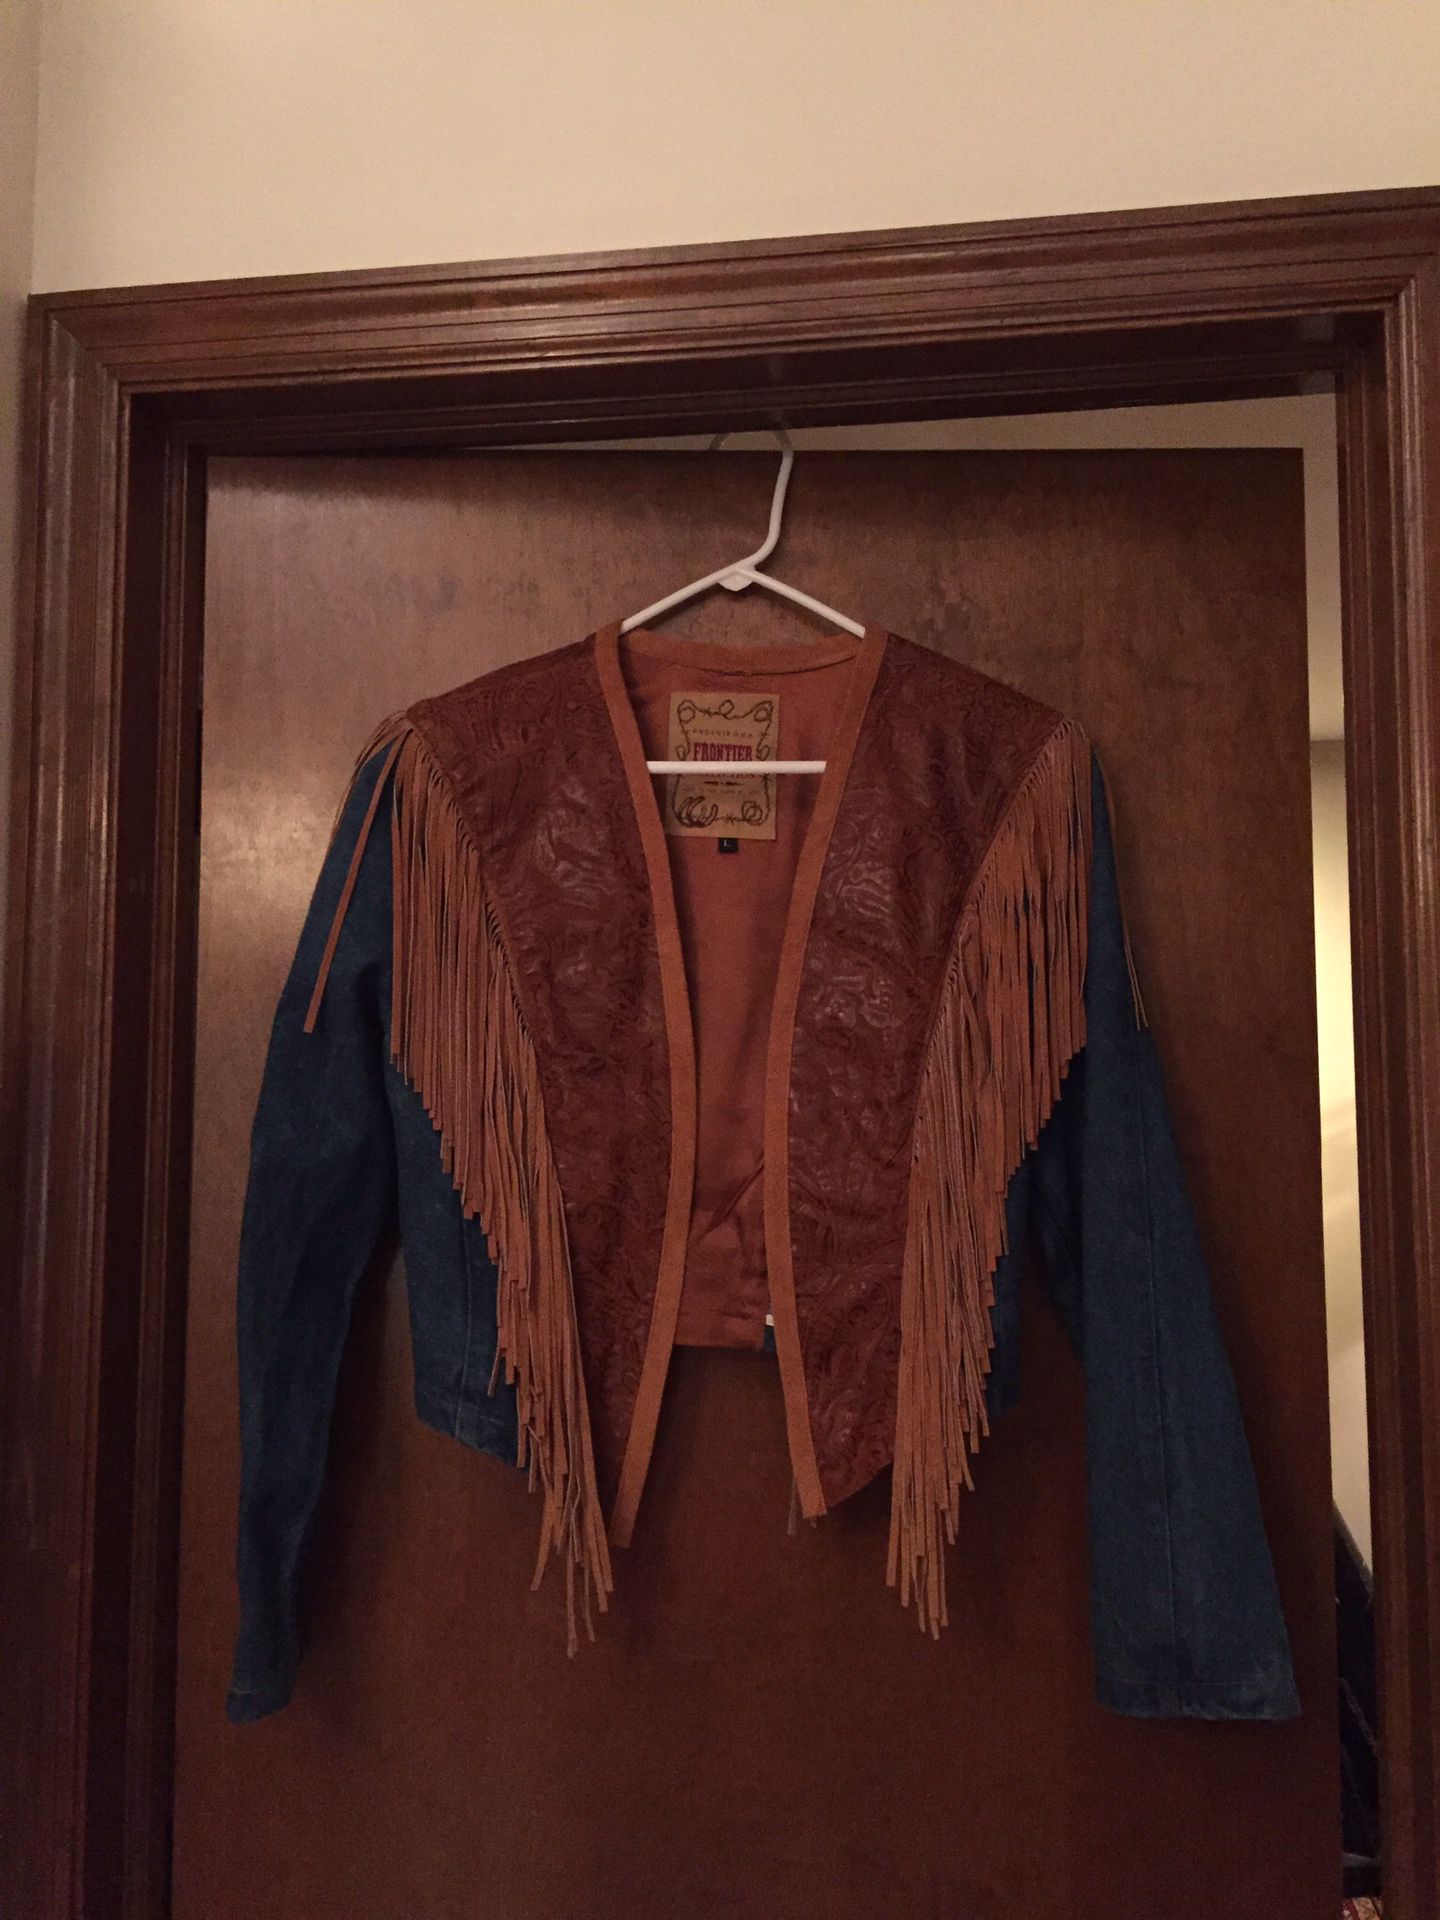 Denim, leather, fringe jacket